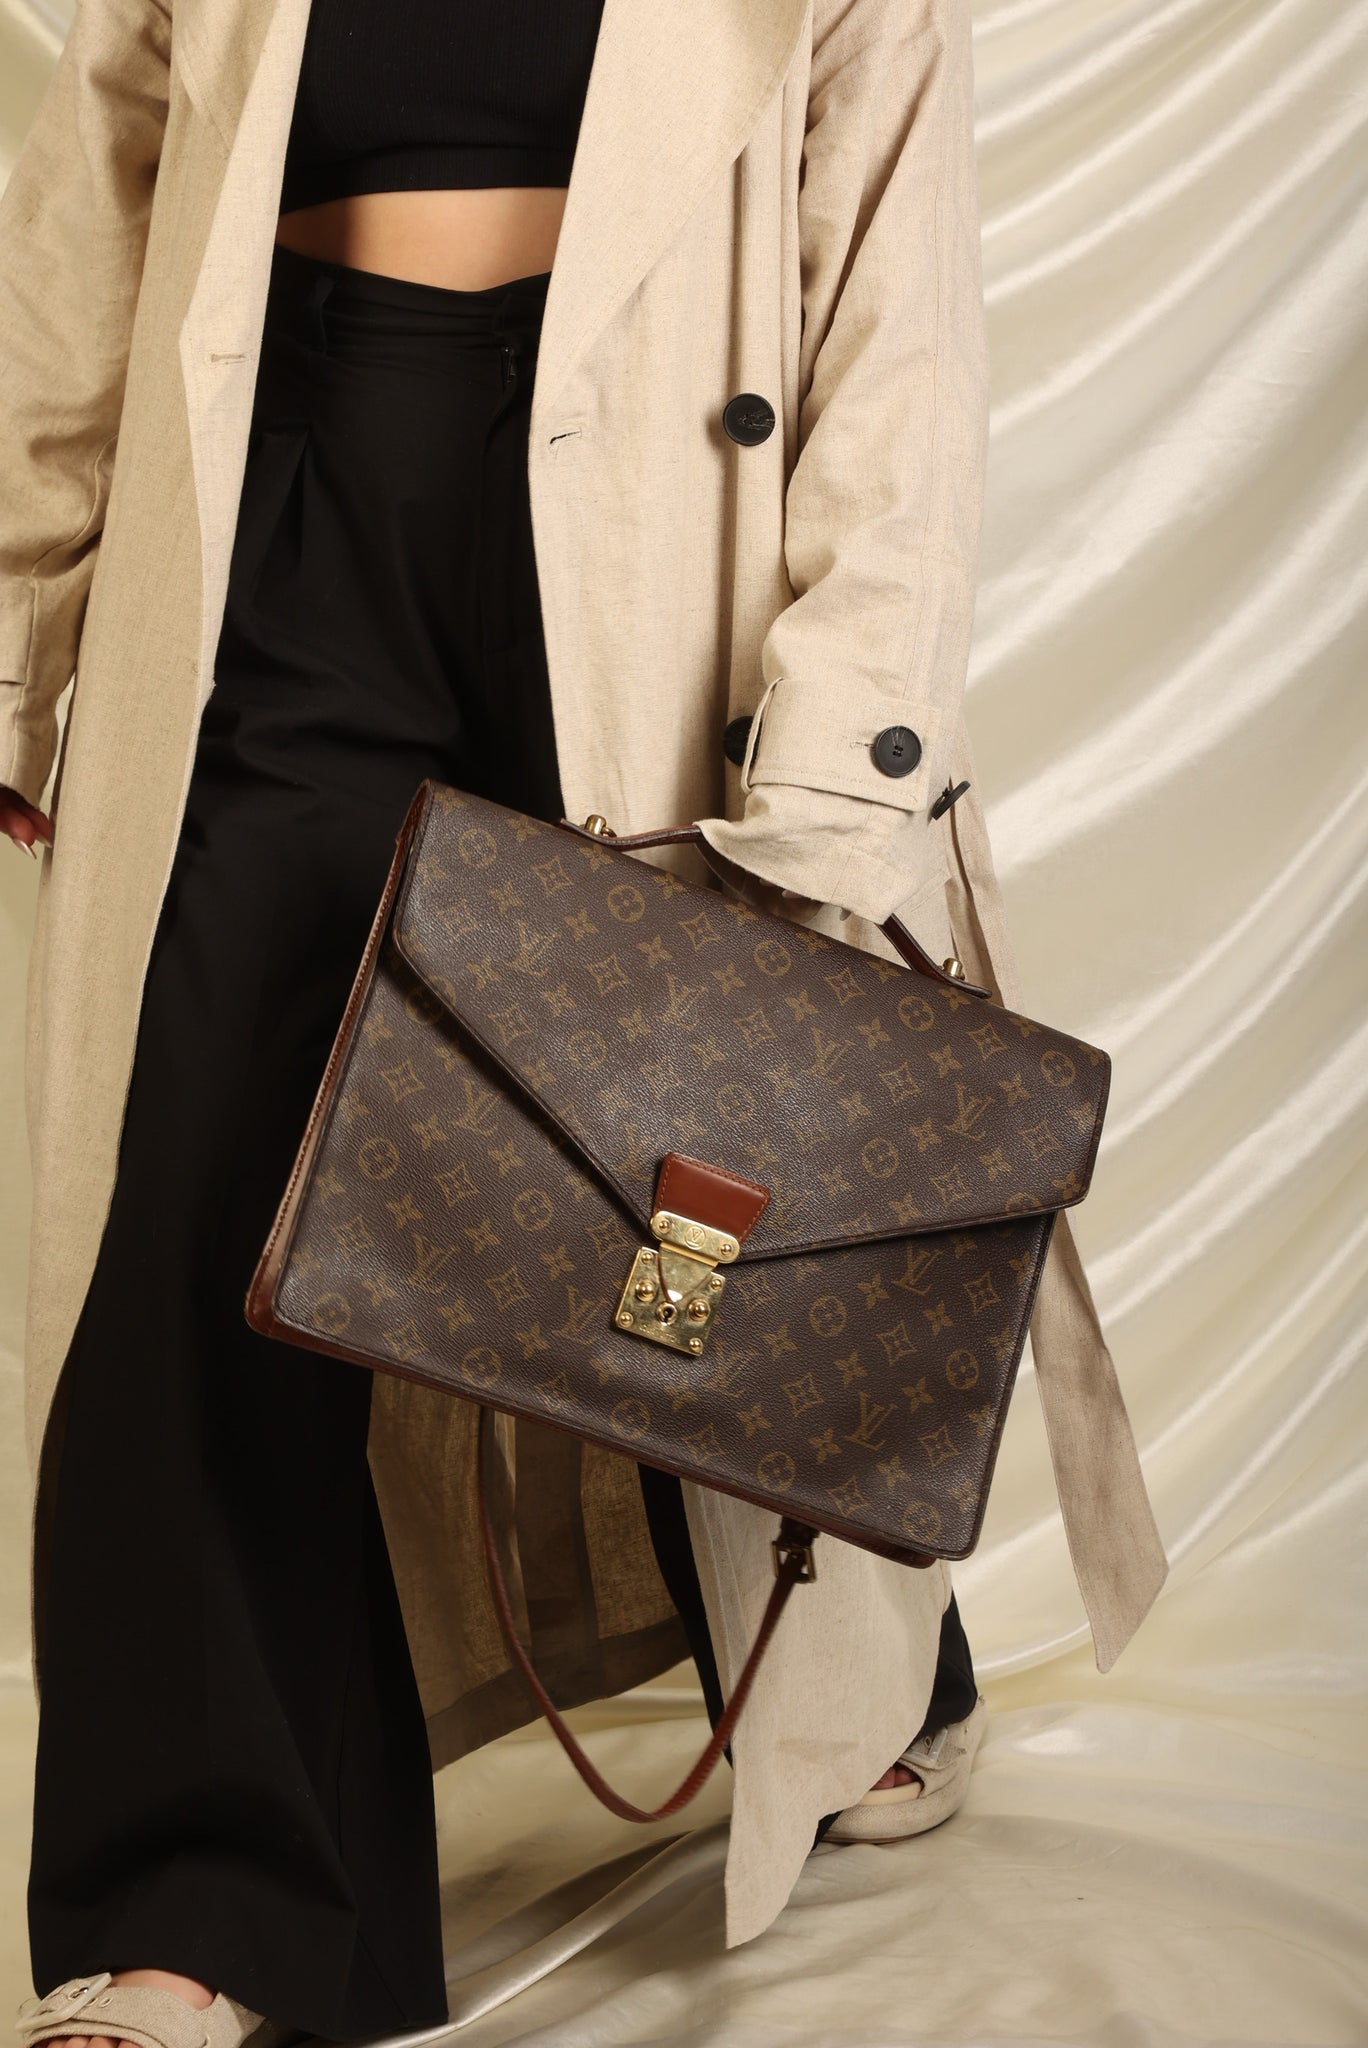 Louis Vuitton, Bags, Louis Vuitton Lv Briefcase Messenger Laptop Porte  Documents Bandouliere Monogram